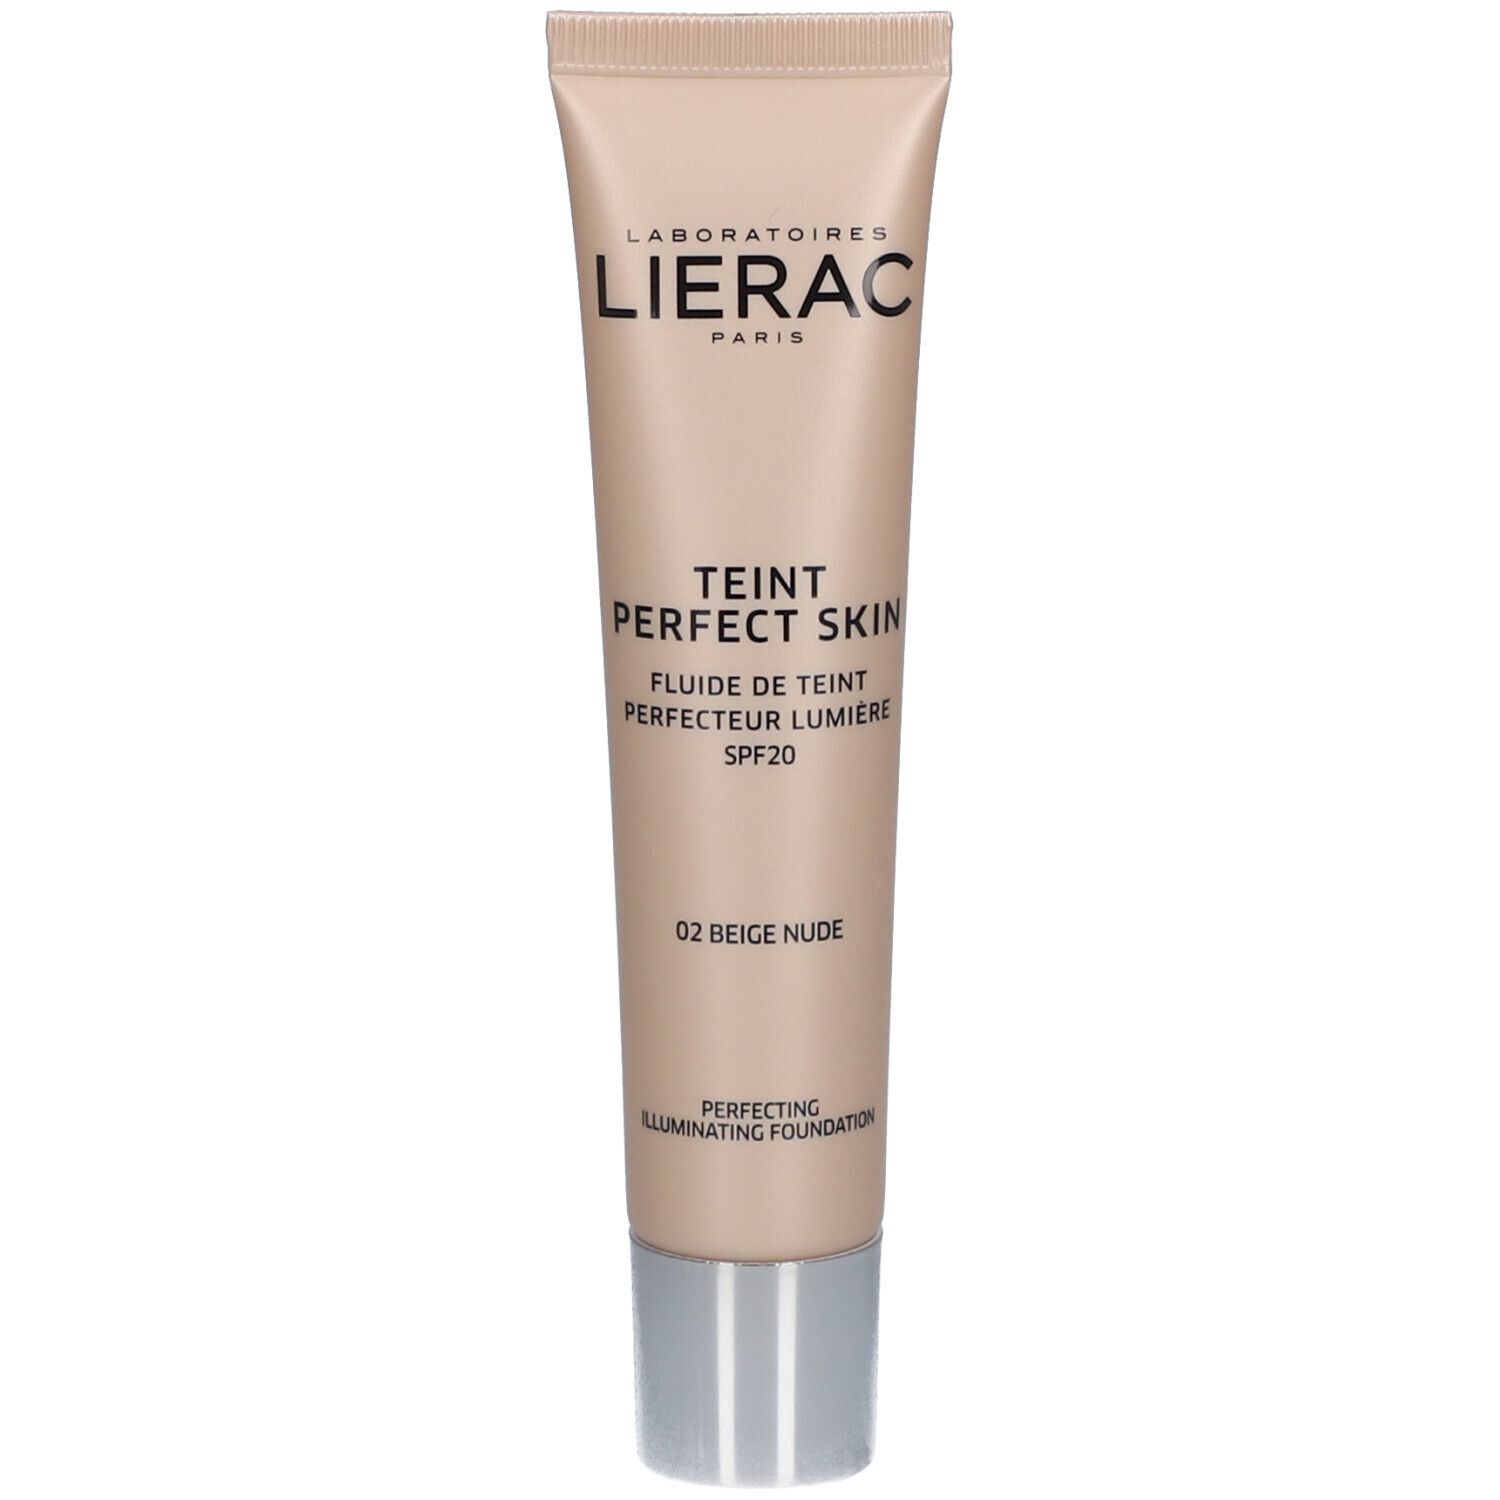 Lierac Teint Perfect Skin Spf20 02 Beige Nude